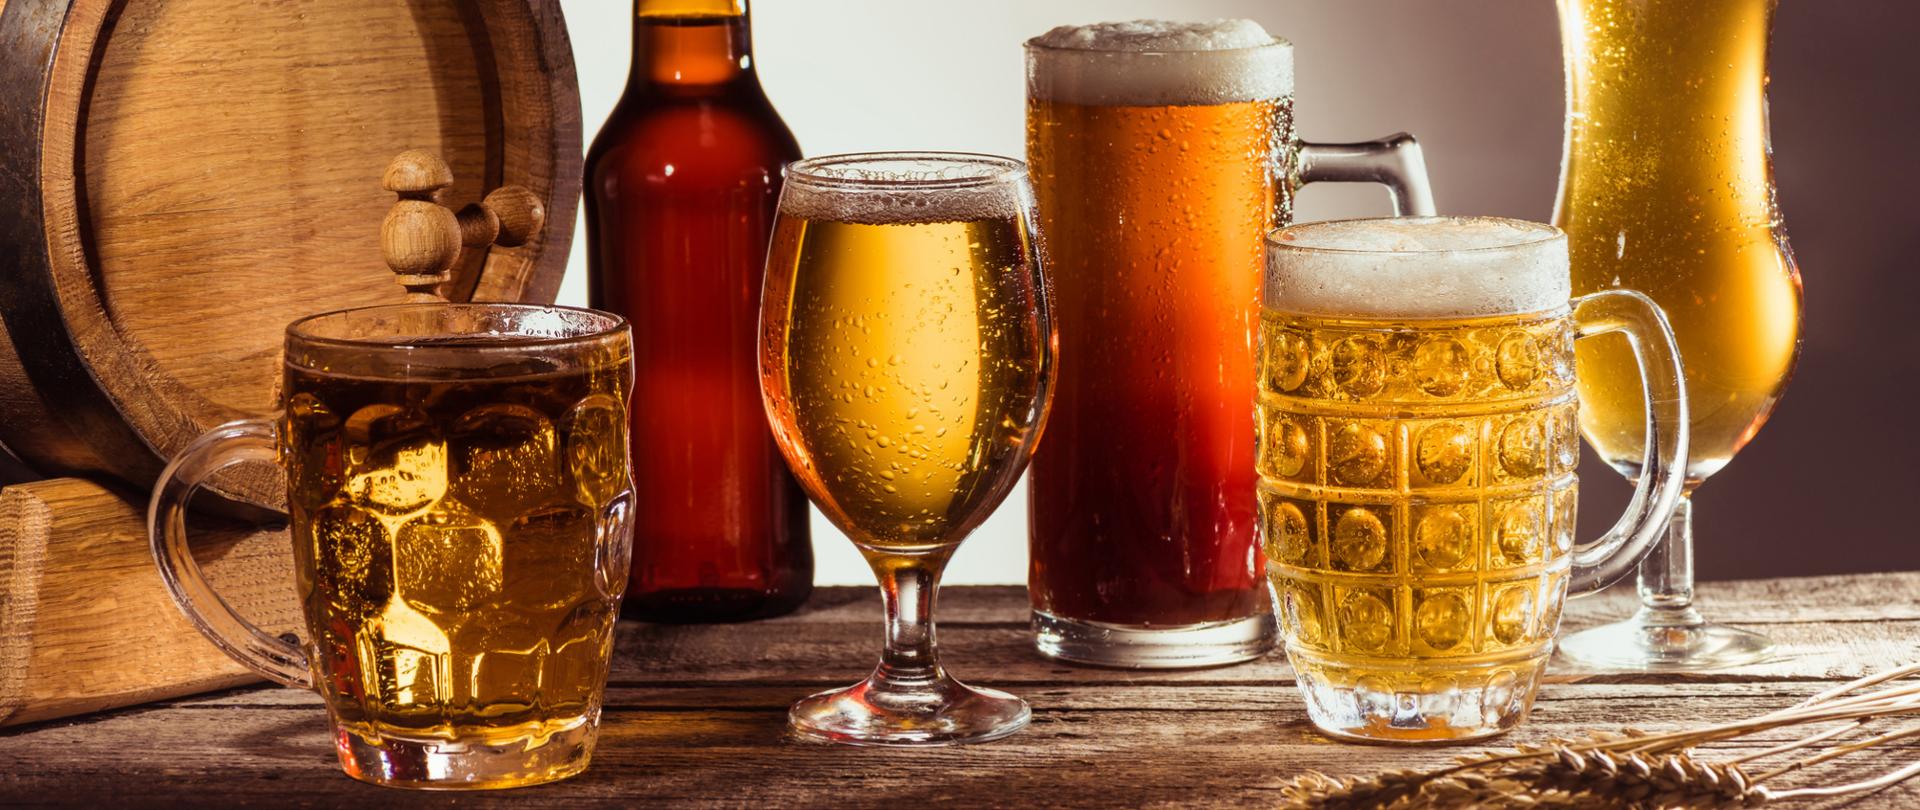 Na zdjęciu jest drewniana beczka wraz z piwem znajdującym się w różnych szklanych kubkach i szklankach oraz w butelce.